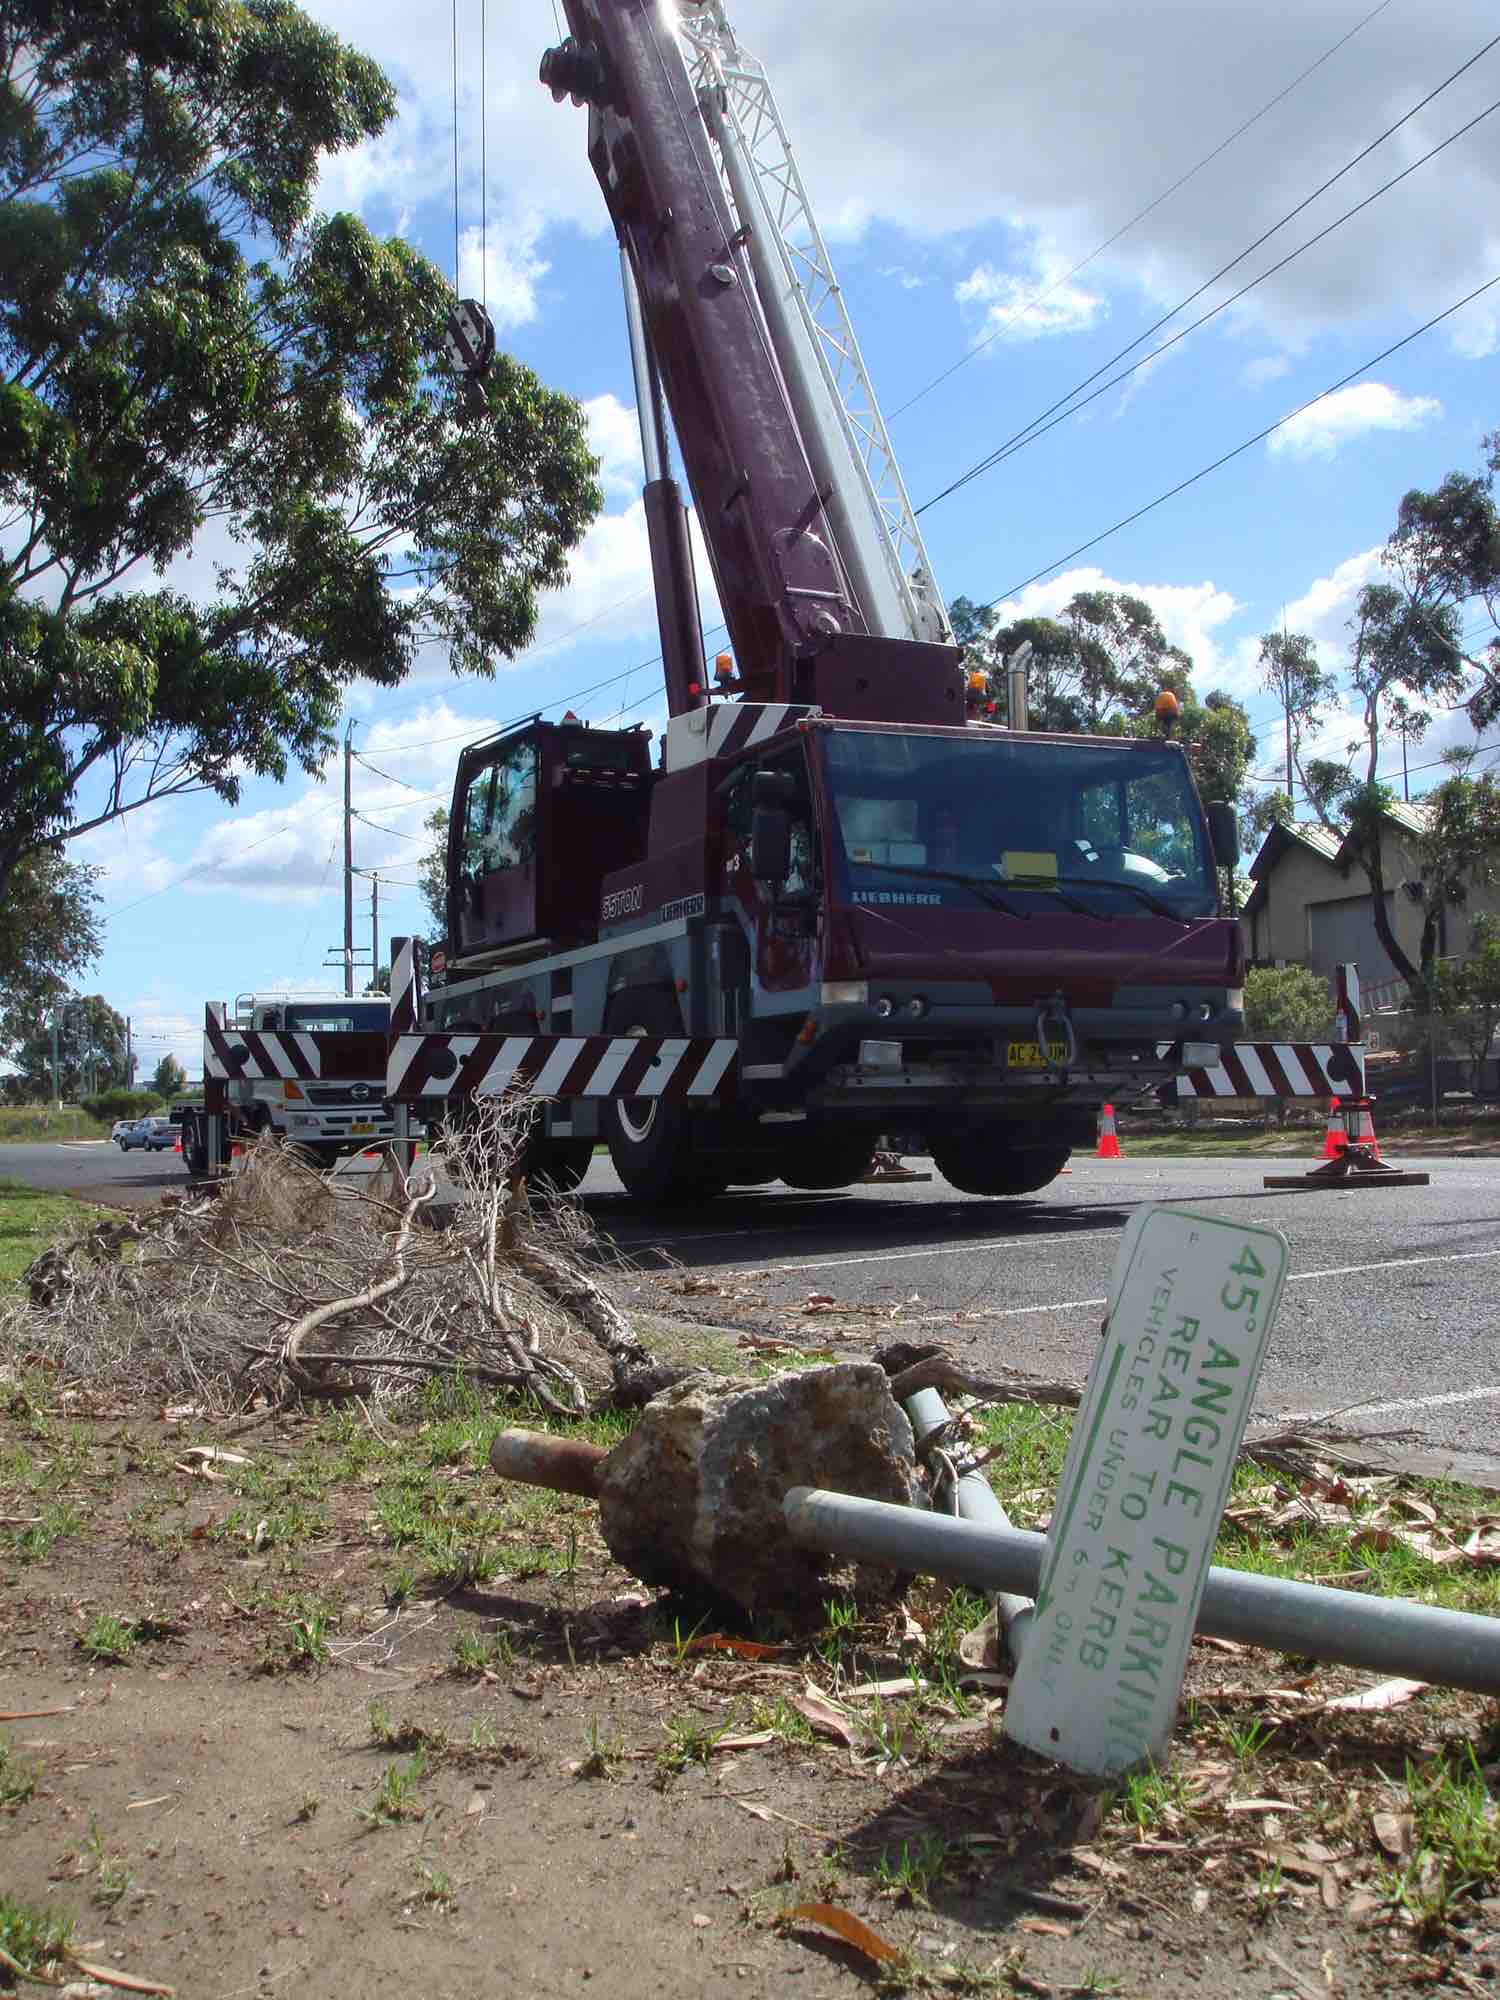 Australia, Big crane parked ready to use. Une grande gure prete à l'emploi sur un shoot en Australie